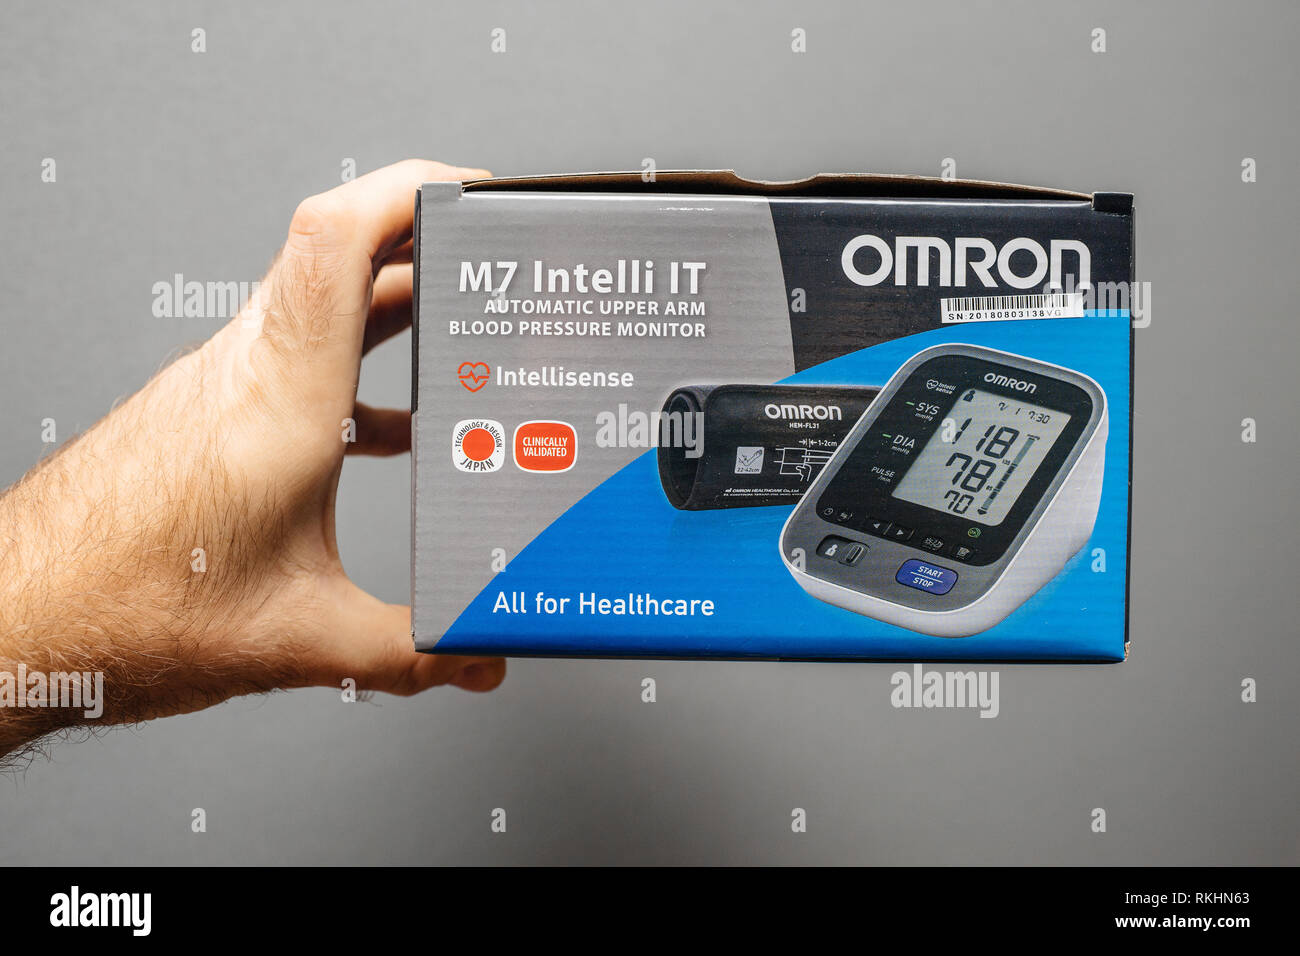 https://c8.alamy.com/comp/RKHN63/paris-france-dec-28-2018-man-pov-at-cardboard-box-of-omron-m7-intelli-it-automatic-upper-arm-blood-pressure-monitor-against-gray-background-RKHN63.jpg